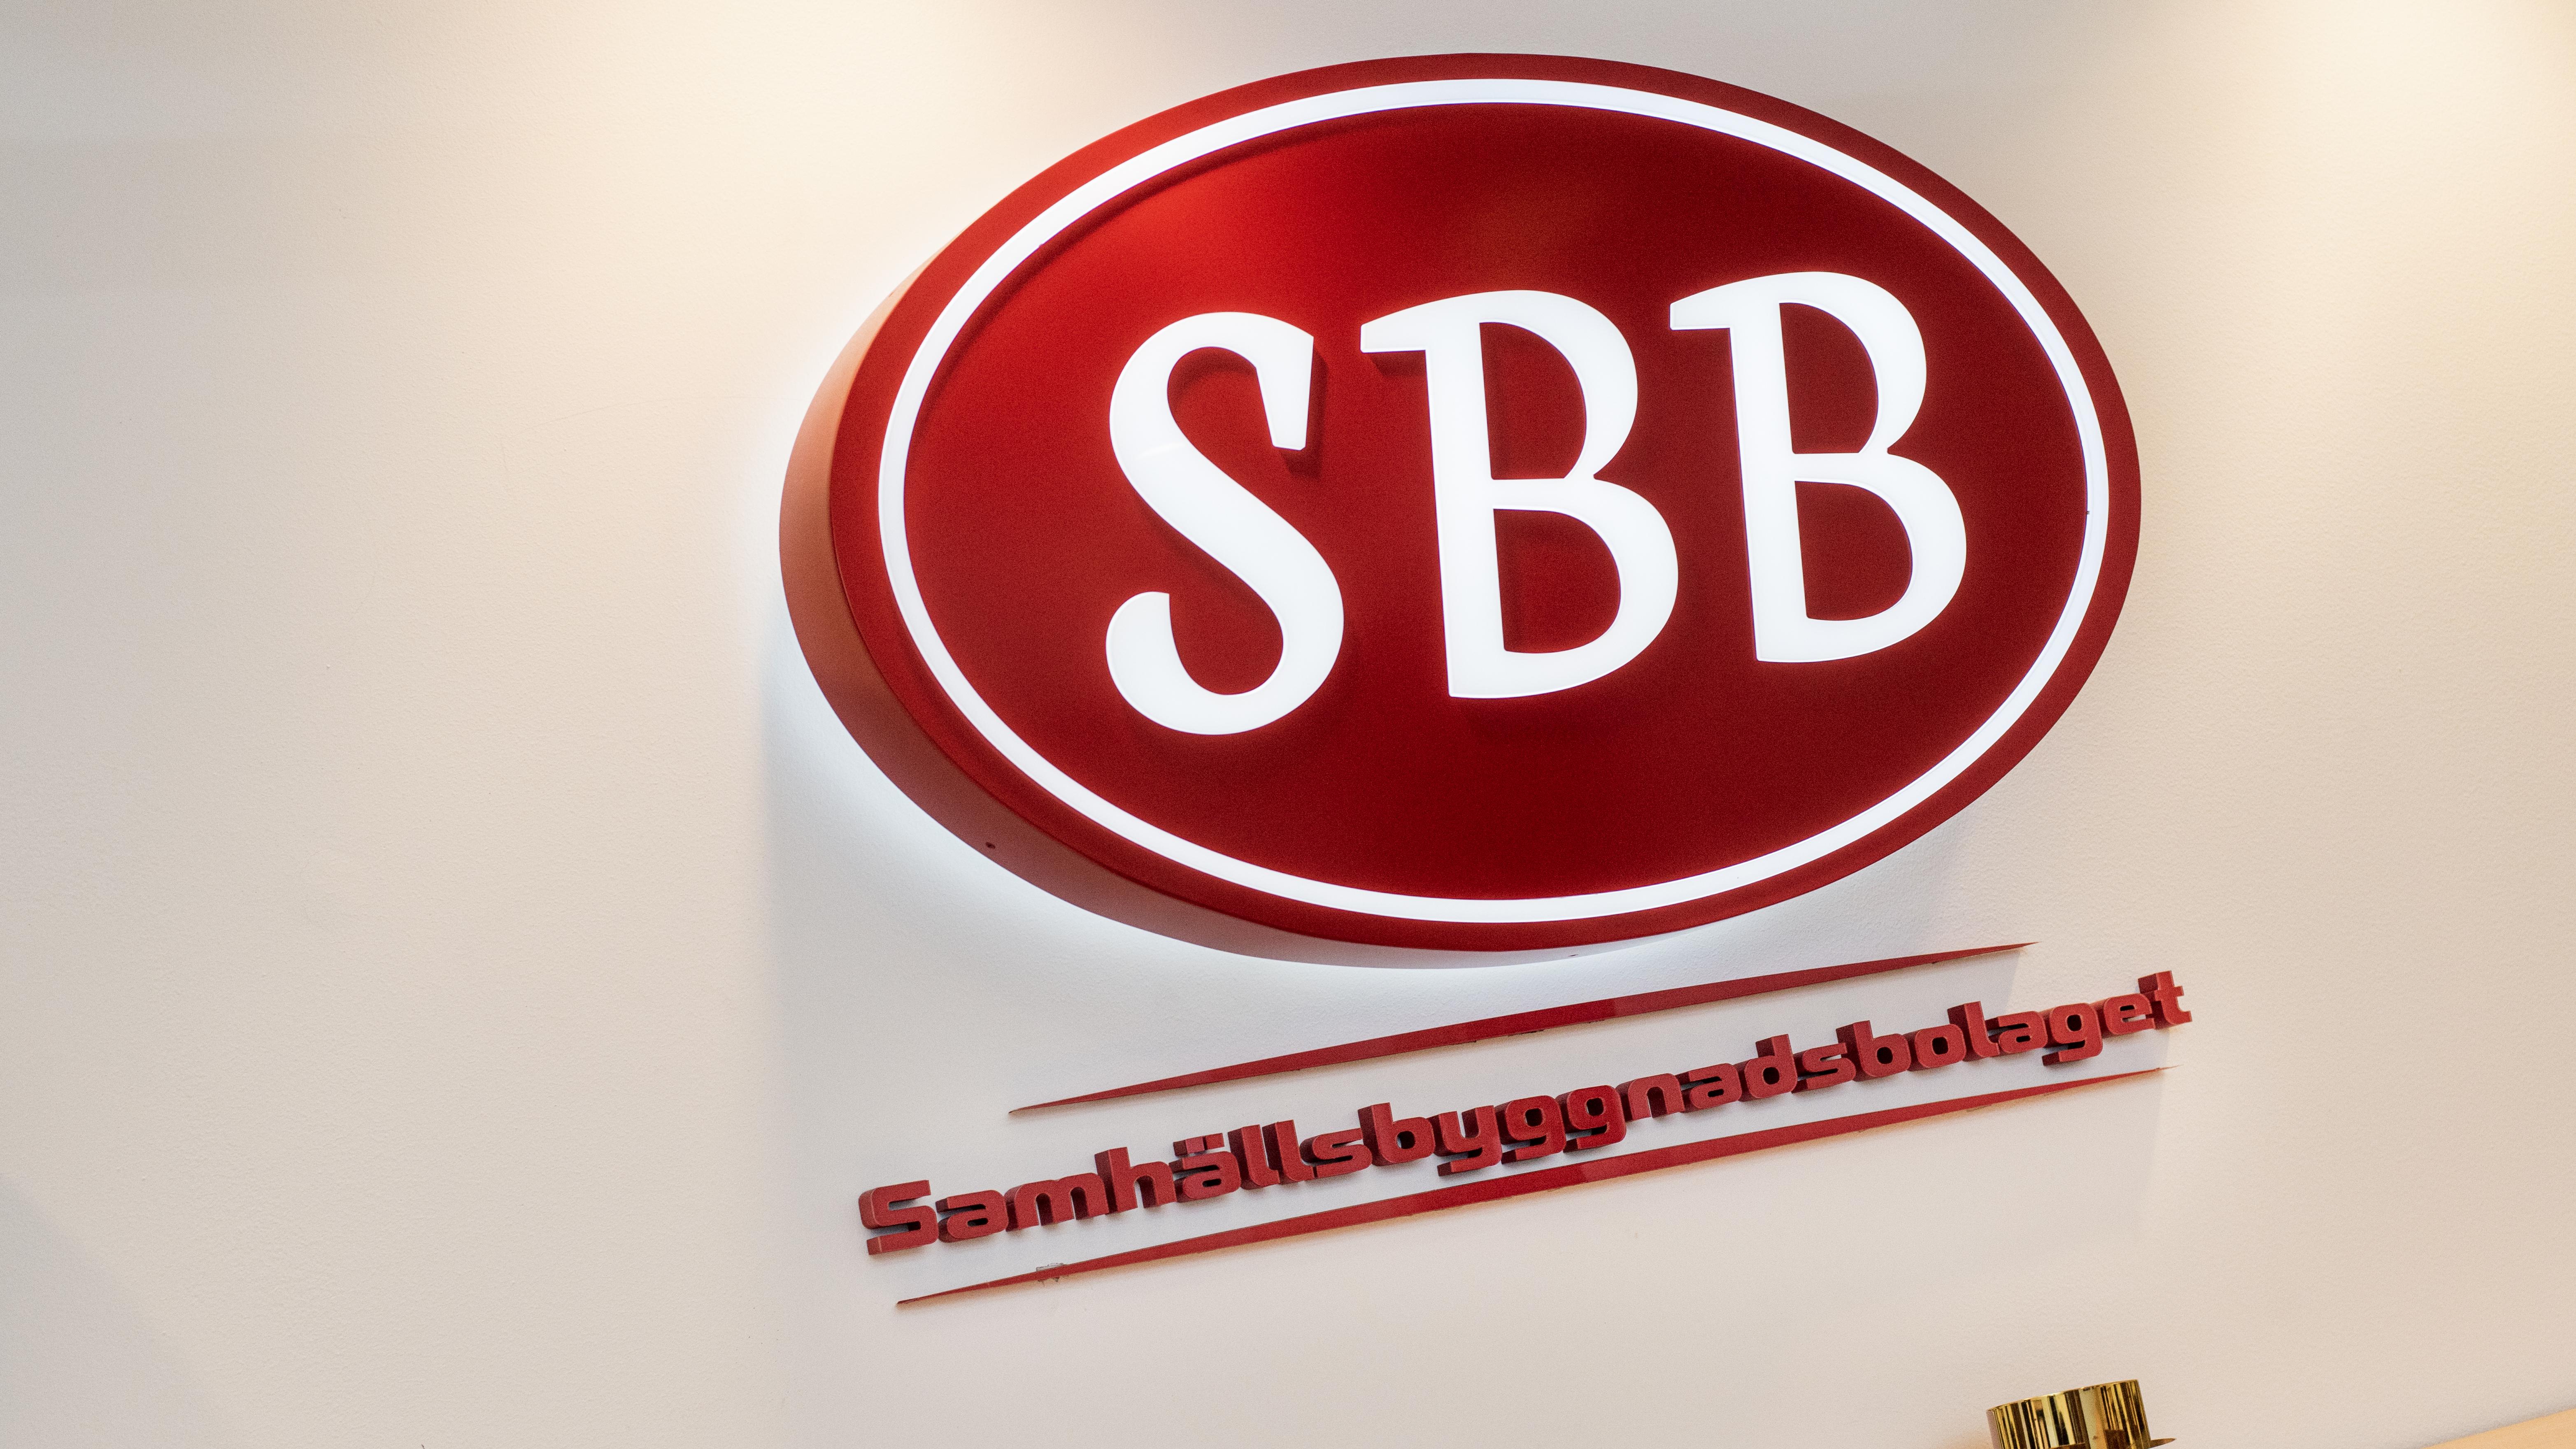 SBB redovisar miljardras i fastighetsvärden